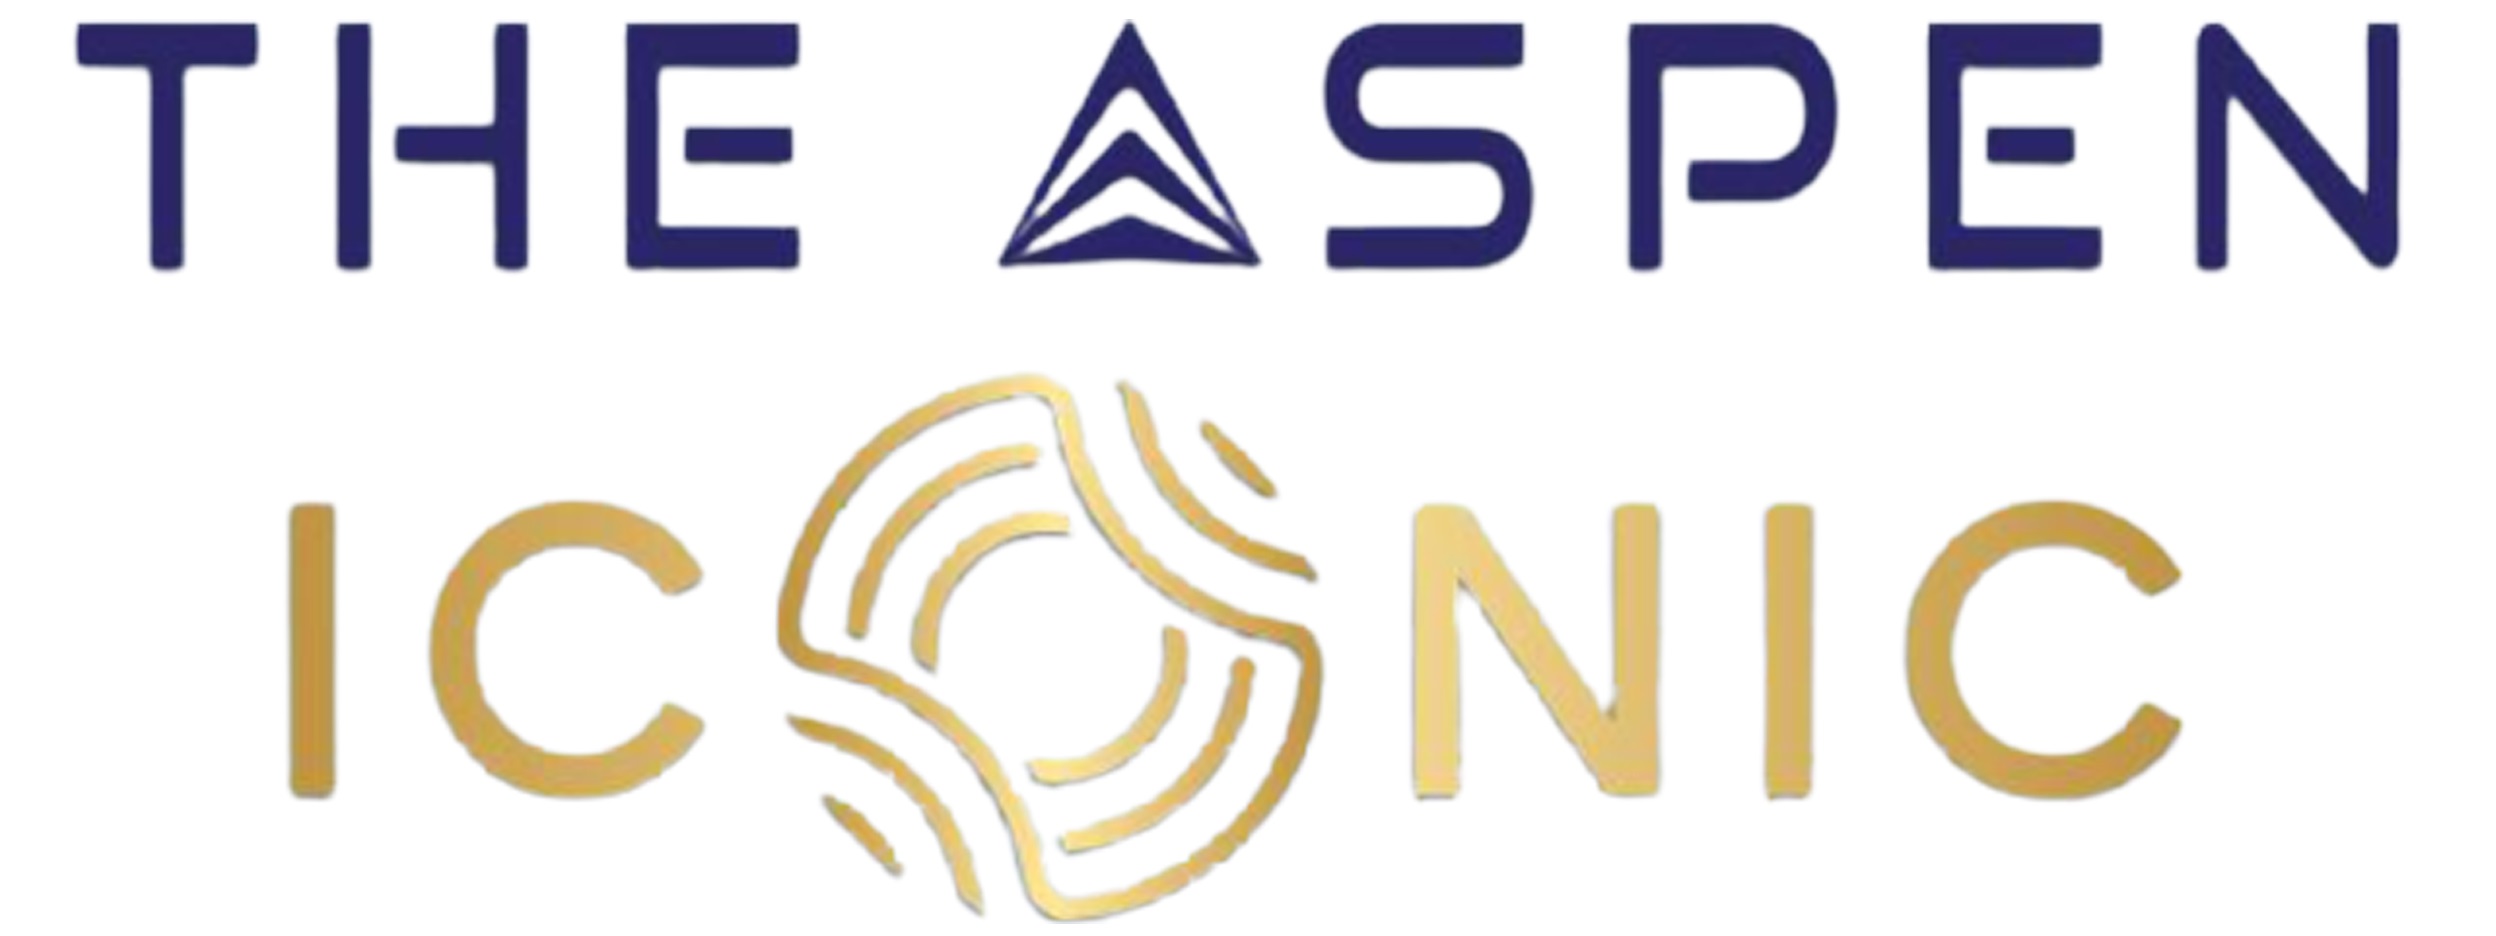 Whiteland The Aspen Iconic Logo